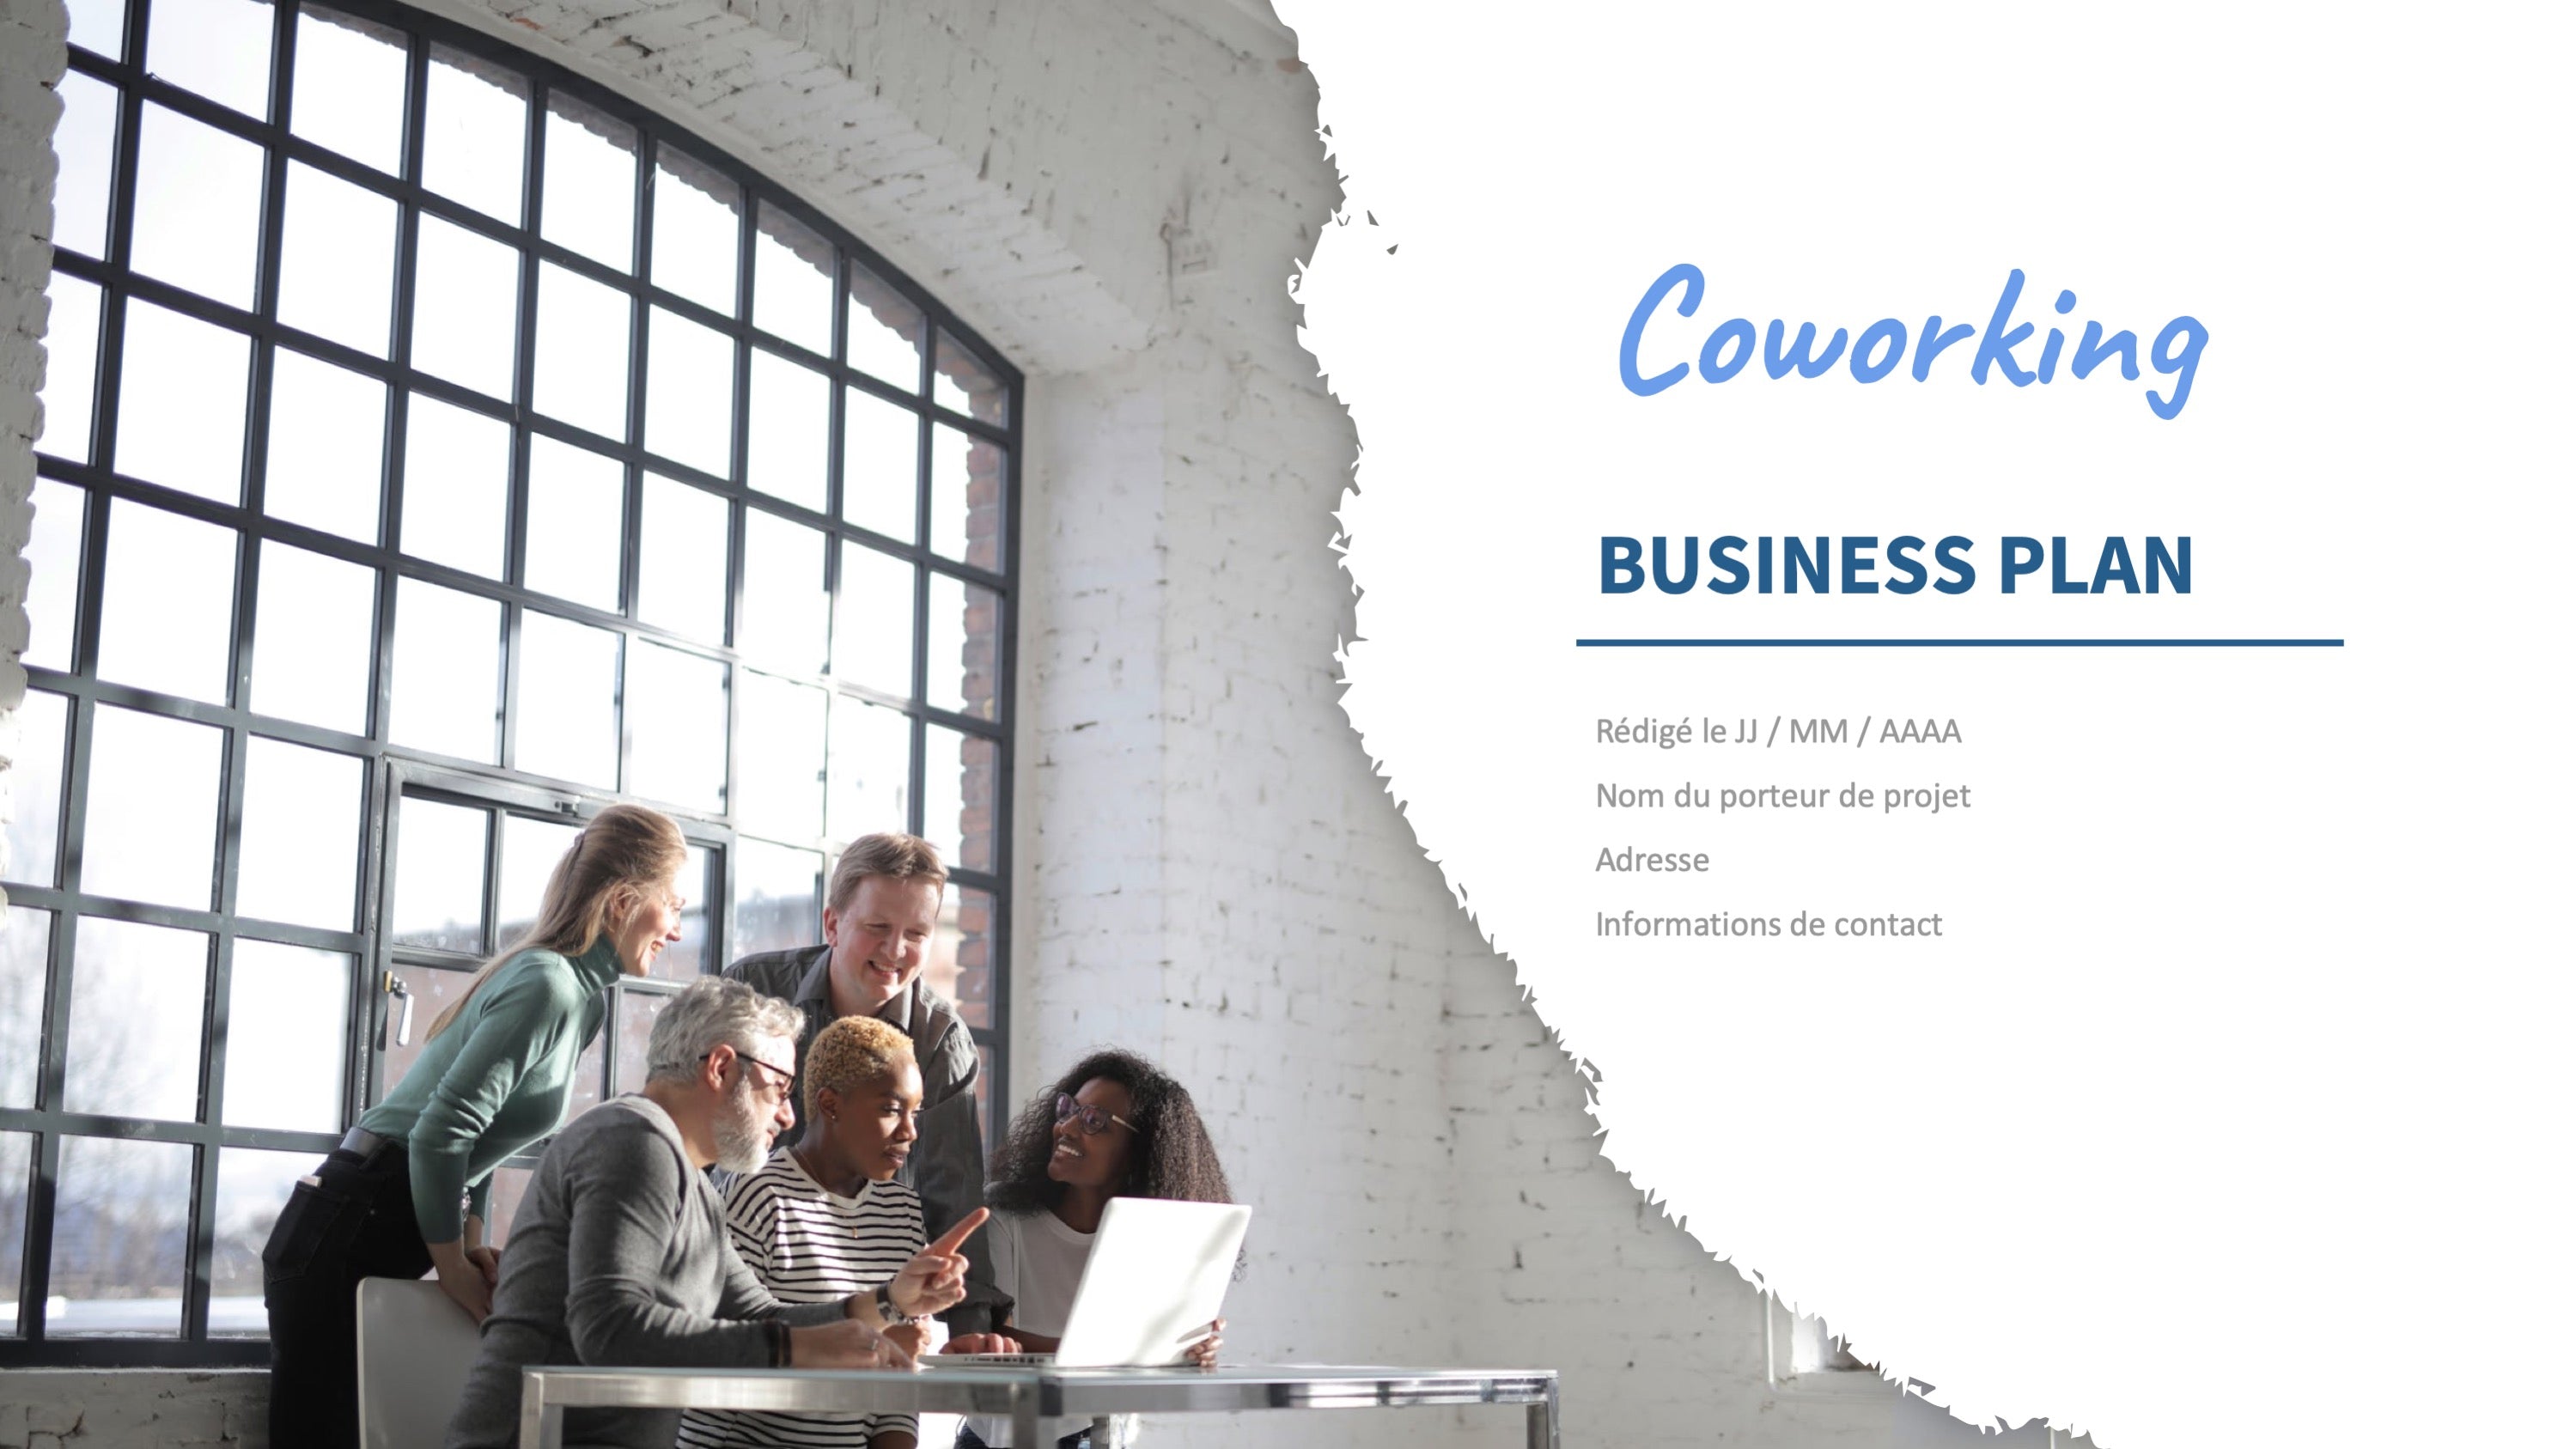 business plan coworking gratuit